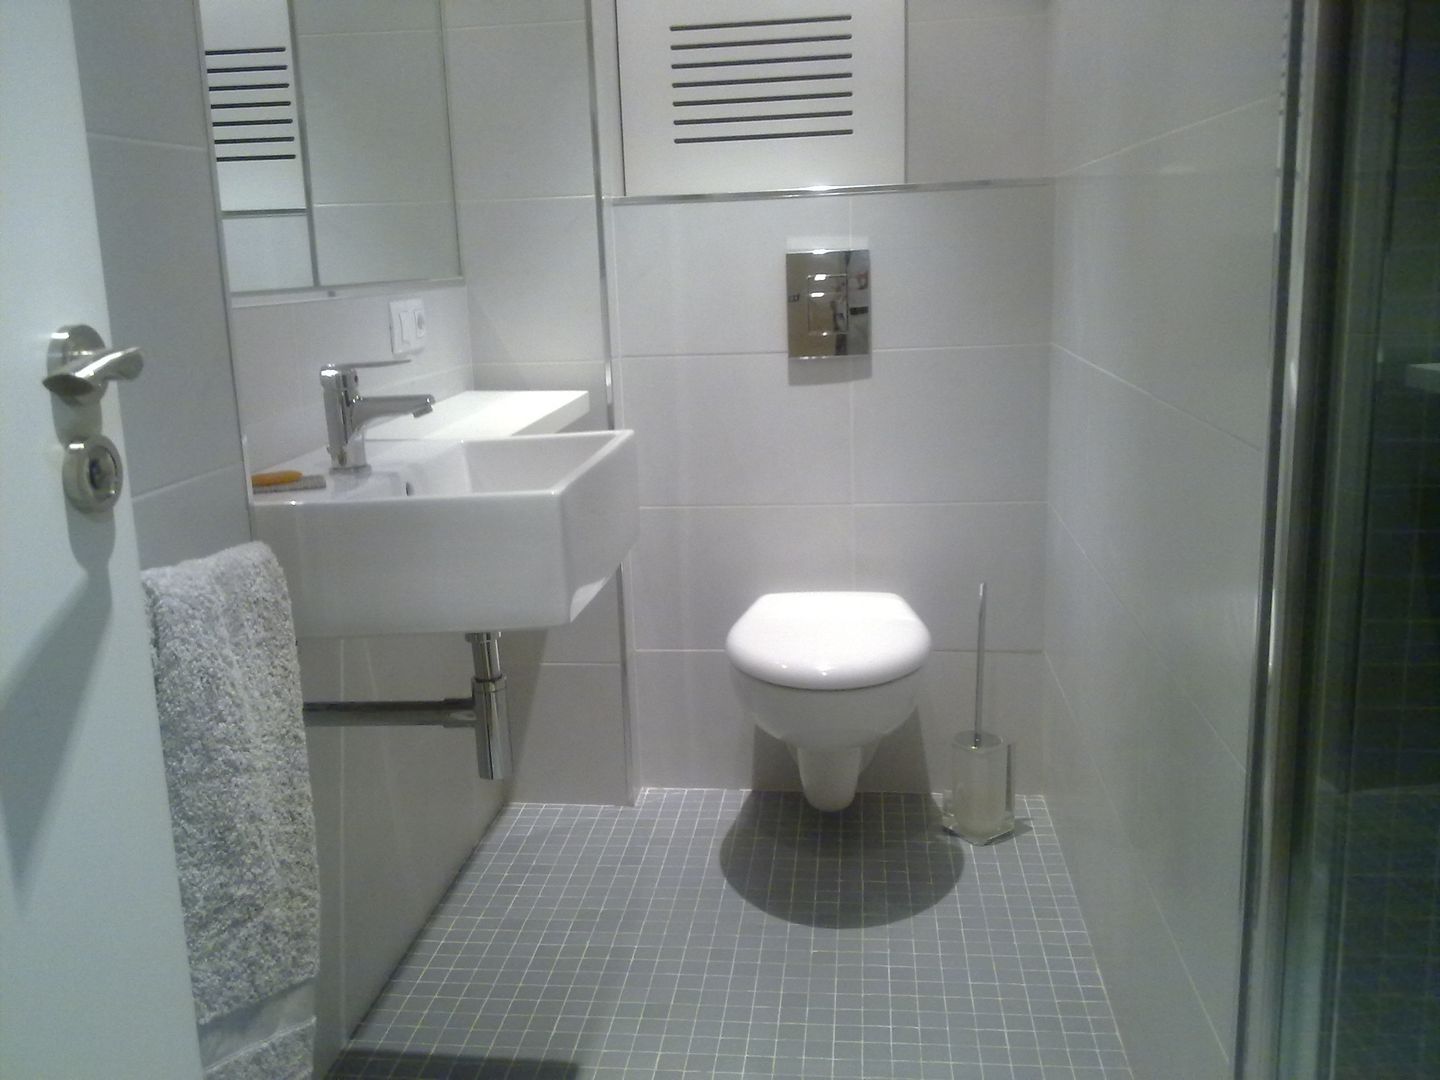 De aseo de cortesía a baño completo, Arquitectos Fin Arquitectos Fin Baños de estilo moderno